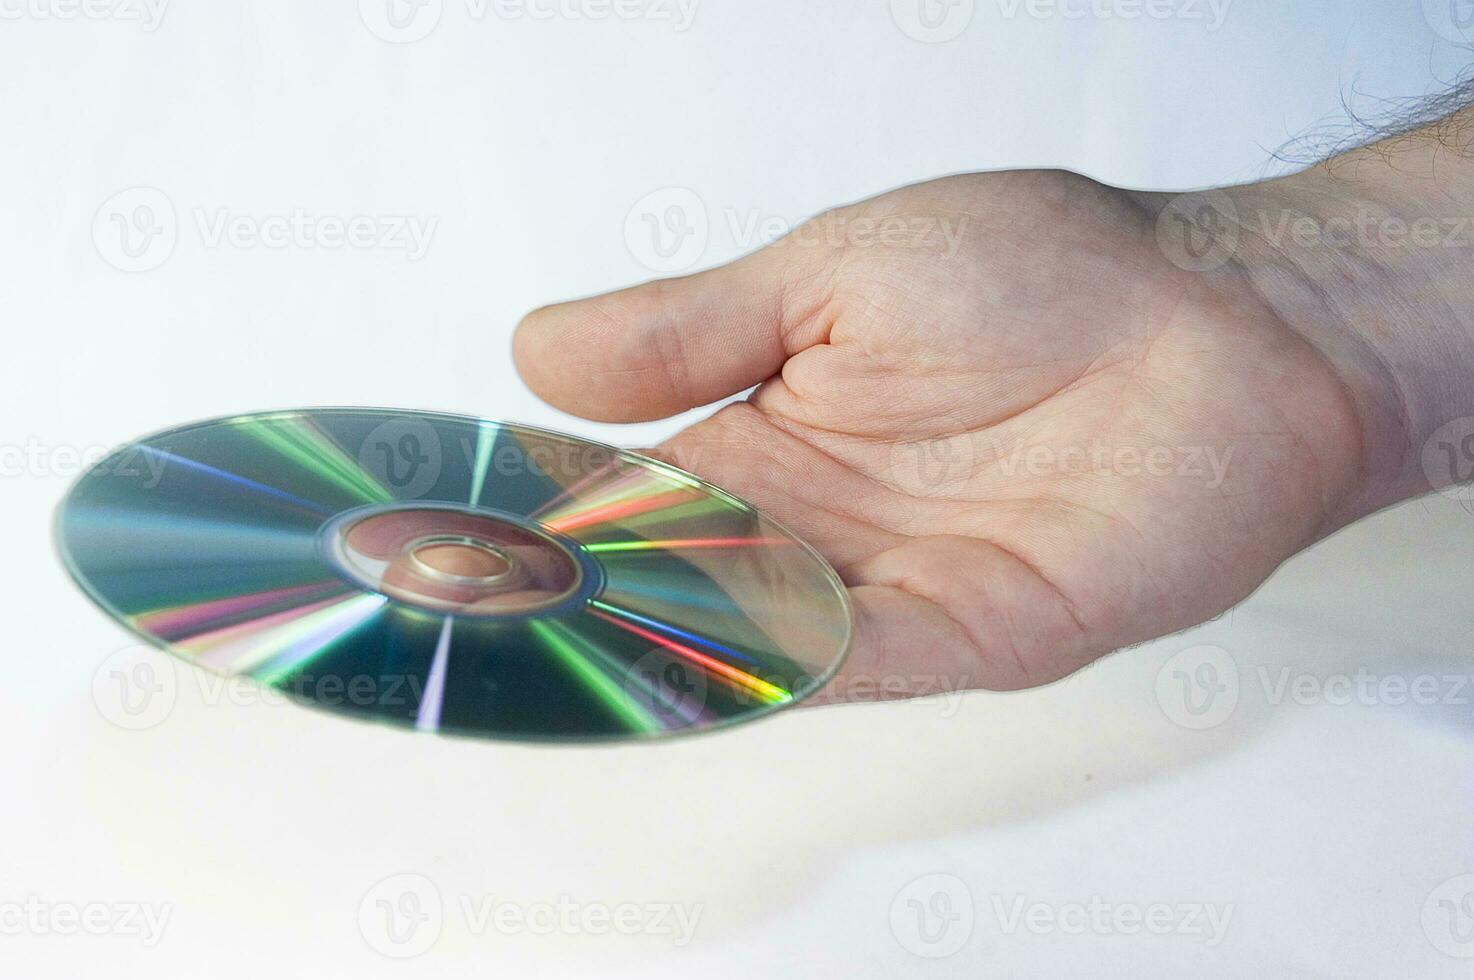 CD disk i manlig hand på vit bakgrund foto